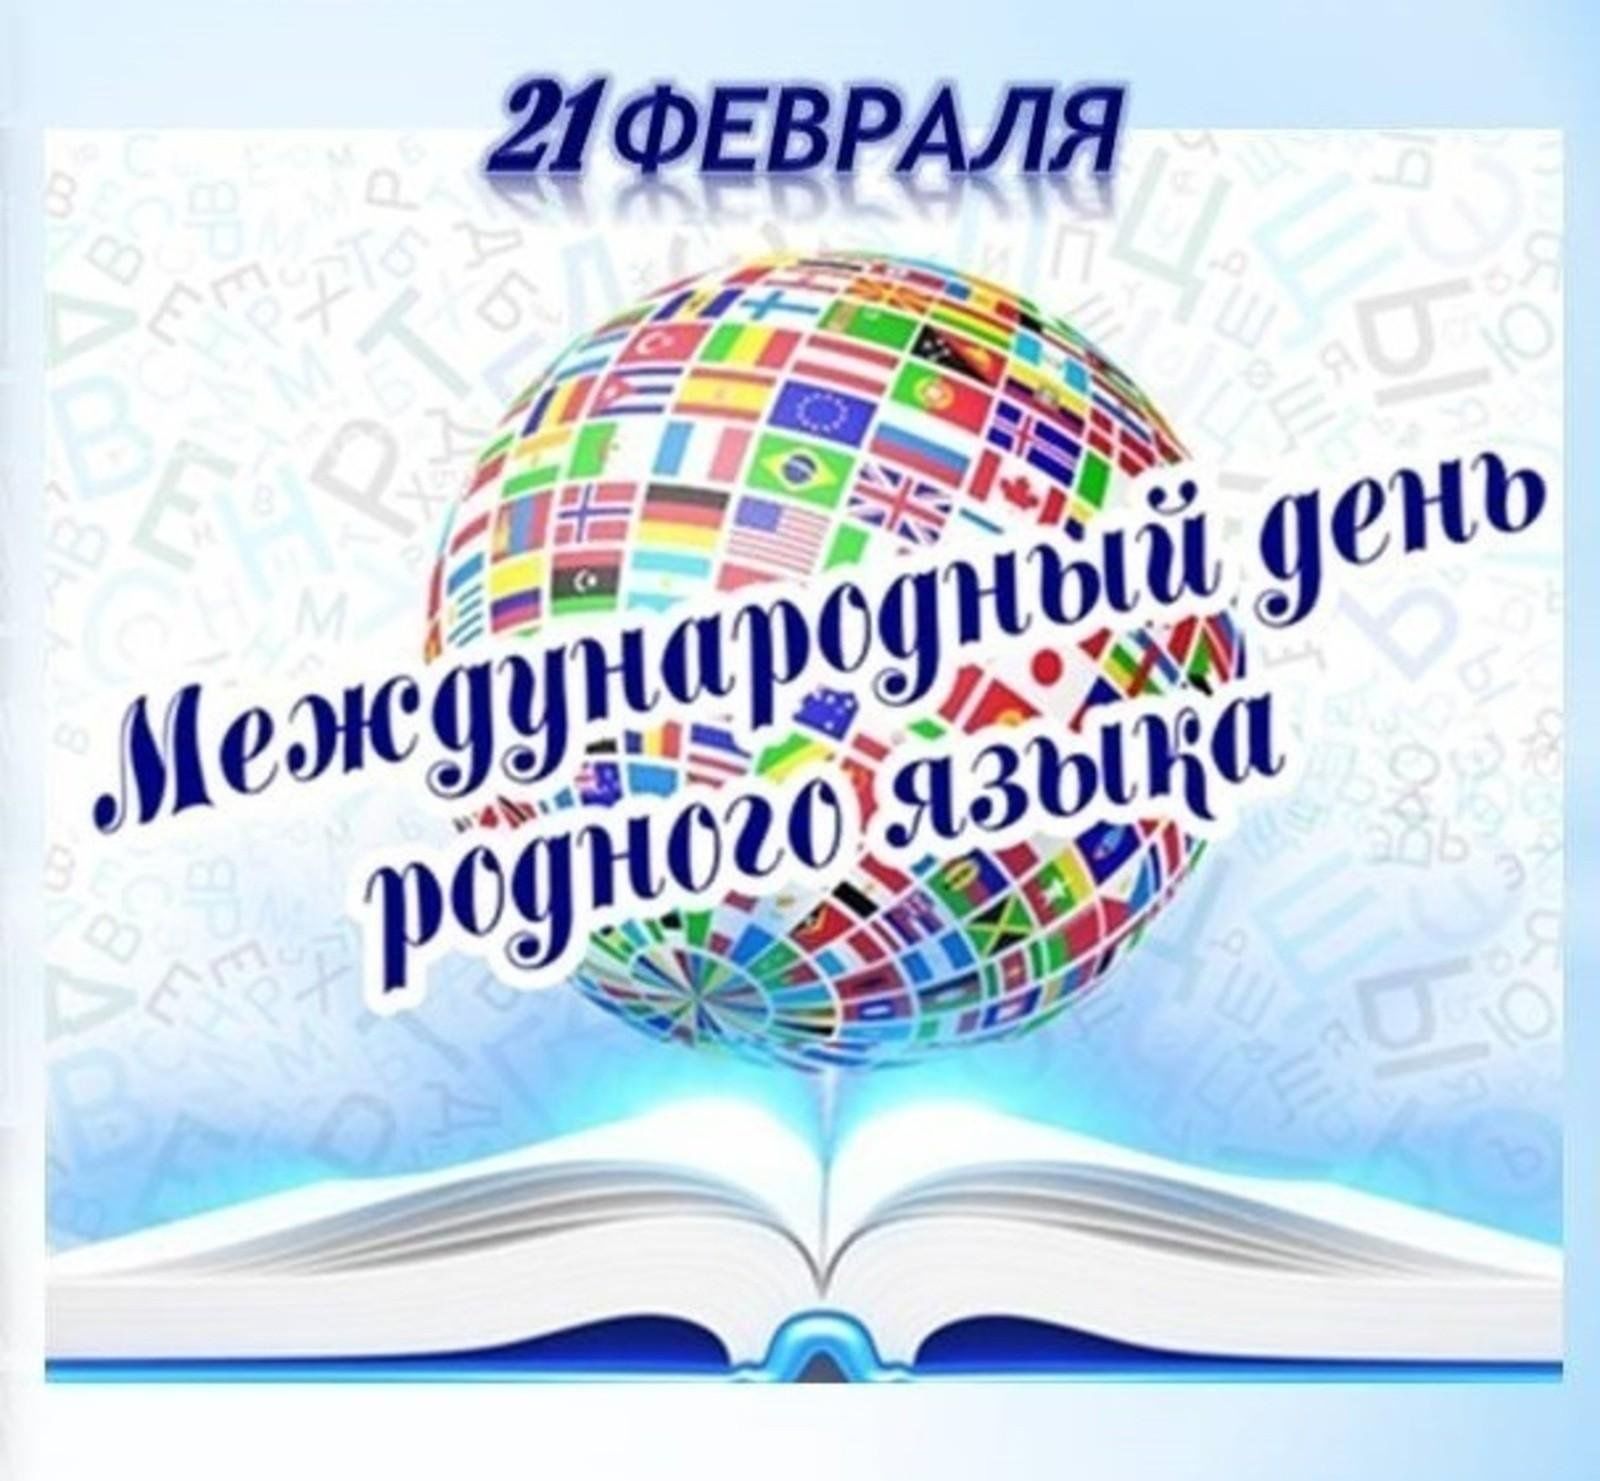 Сегодня праздник 21 февраля. Международный день родного языка. Международный день родного я. 21 Февраля день родного языка. День международного языка 21 февраля.